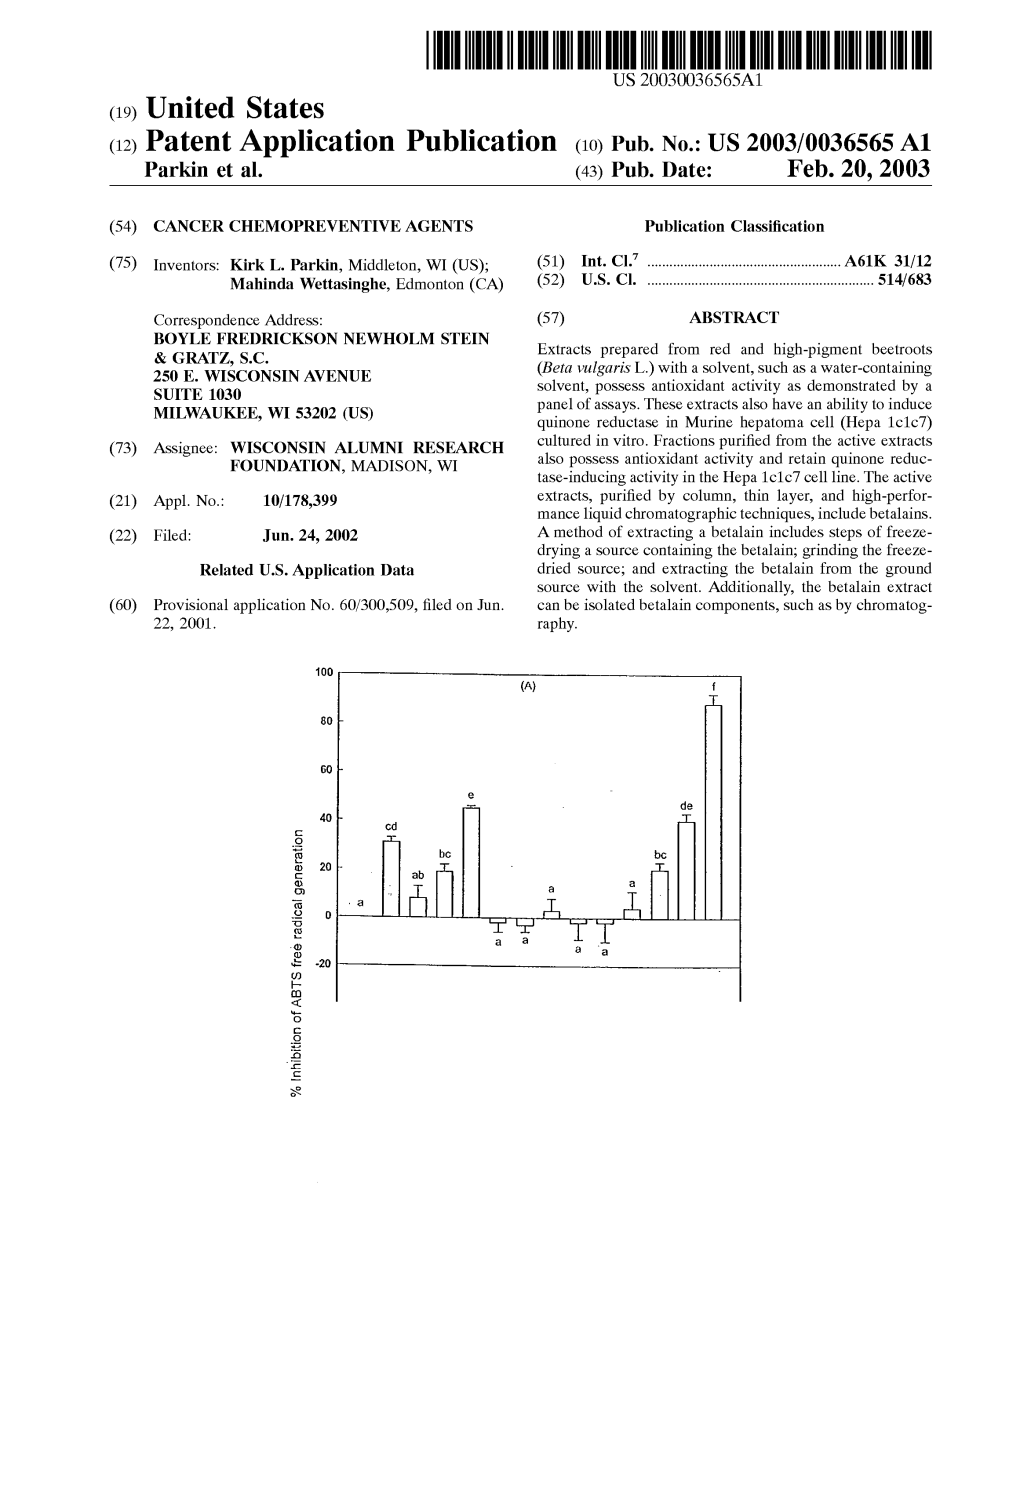 (12) Patent Application Publication (10) Pub. No.: US 2003/0036565 A1 Parkin Et Al